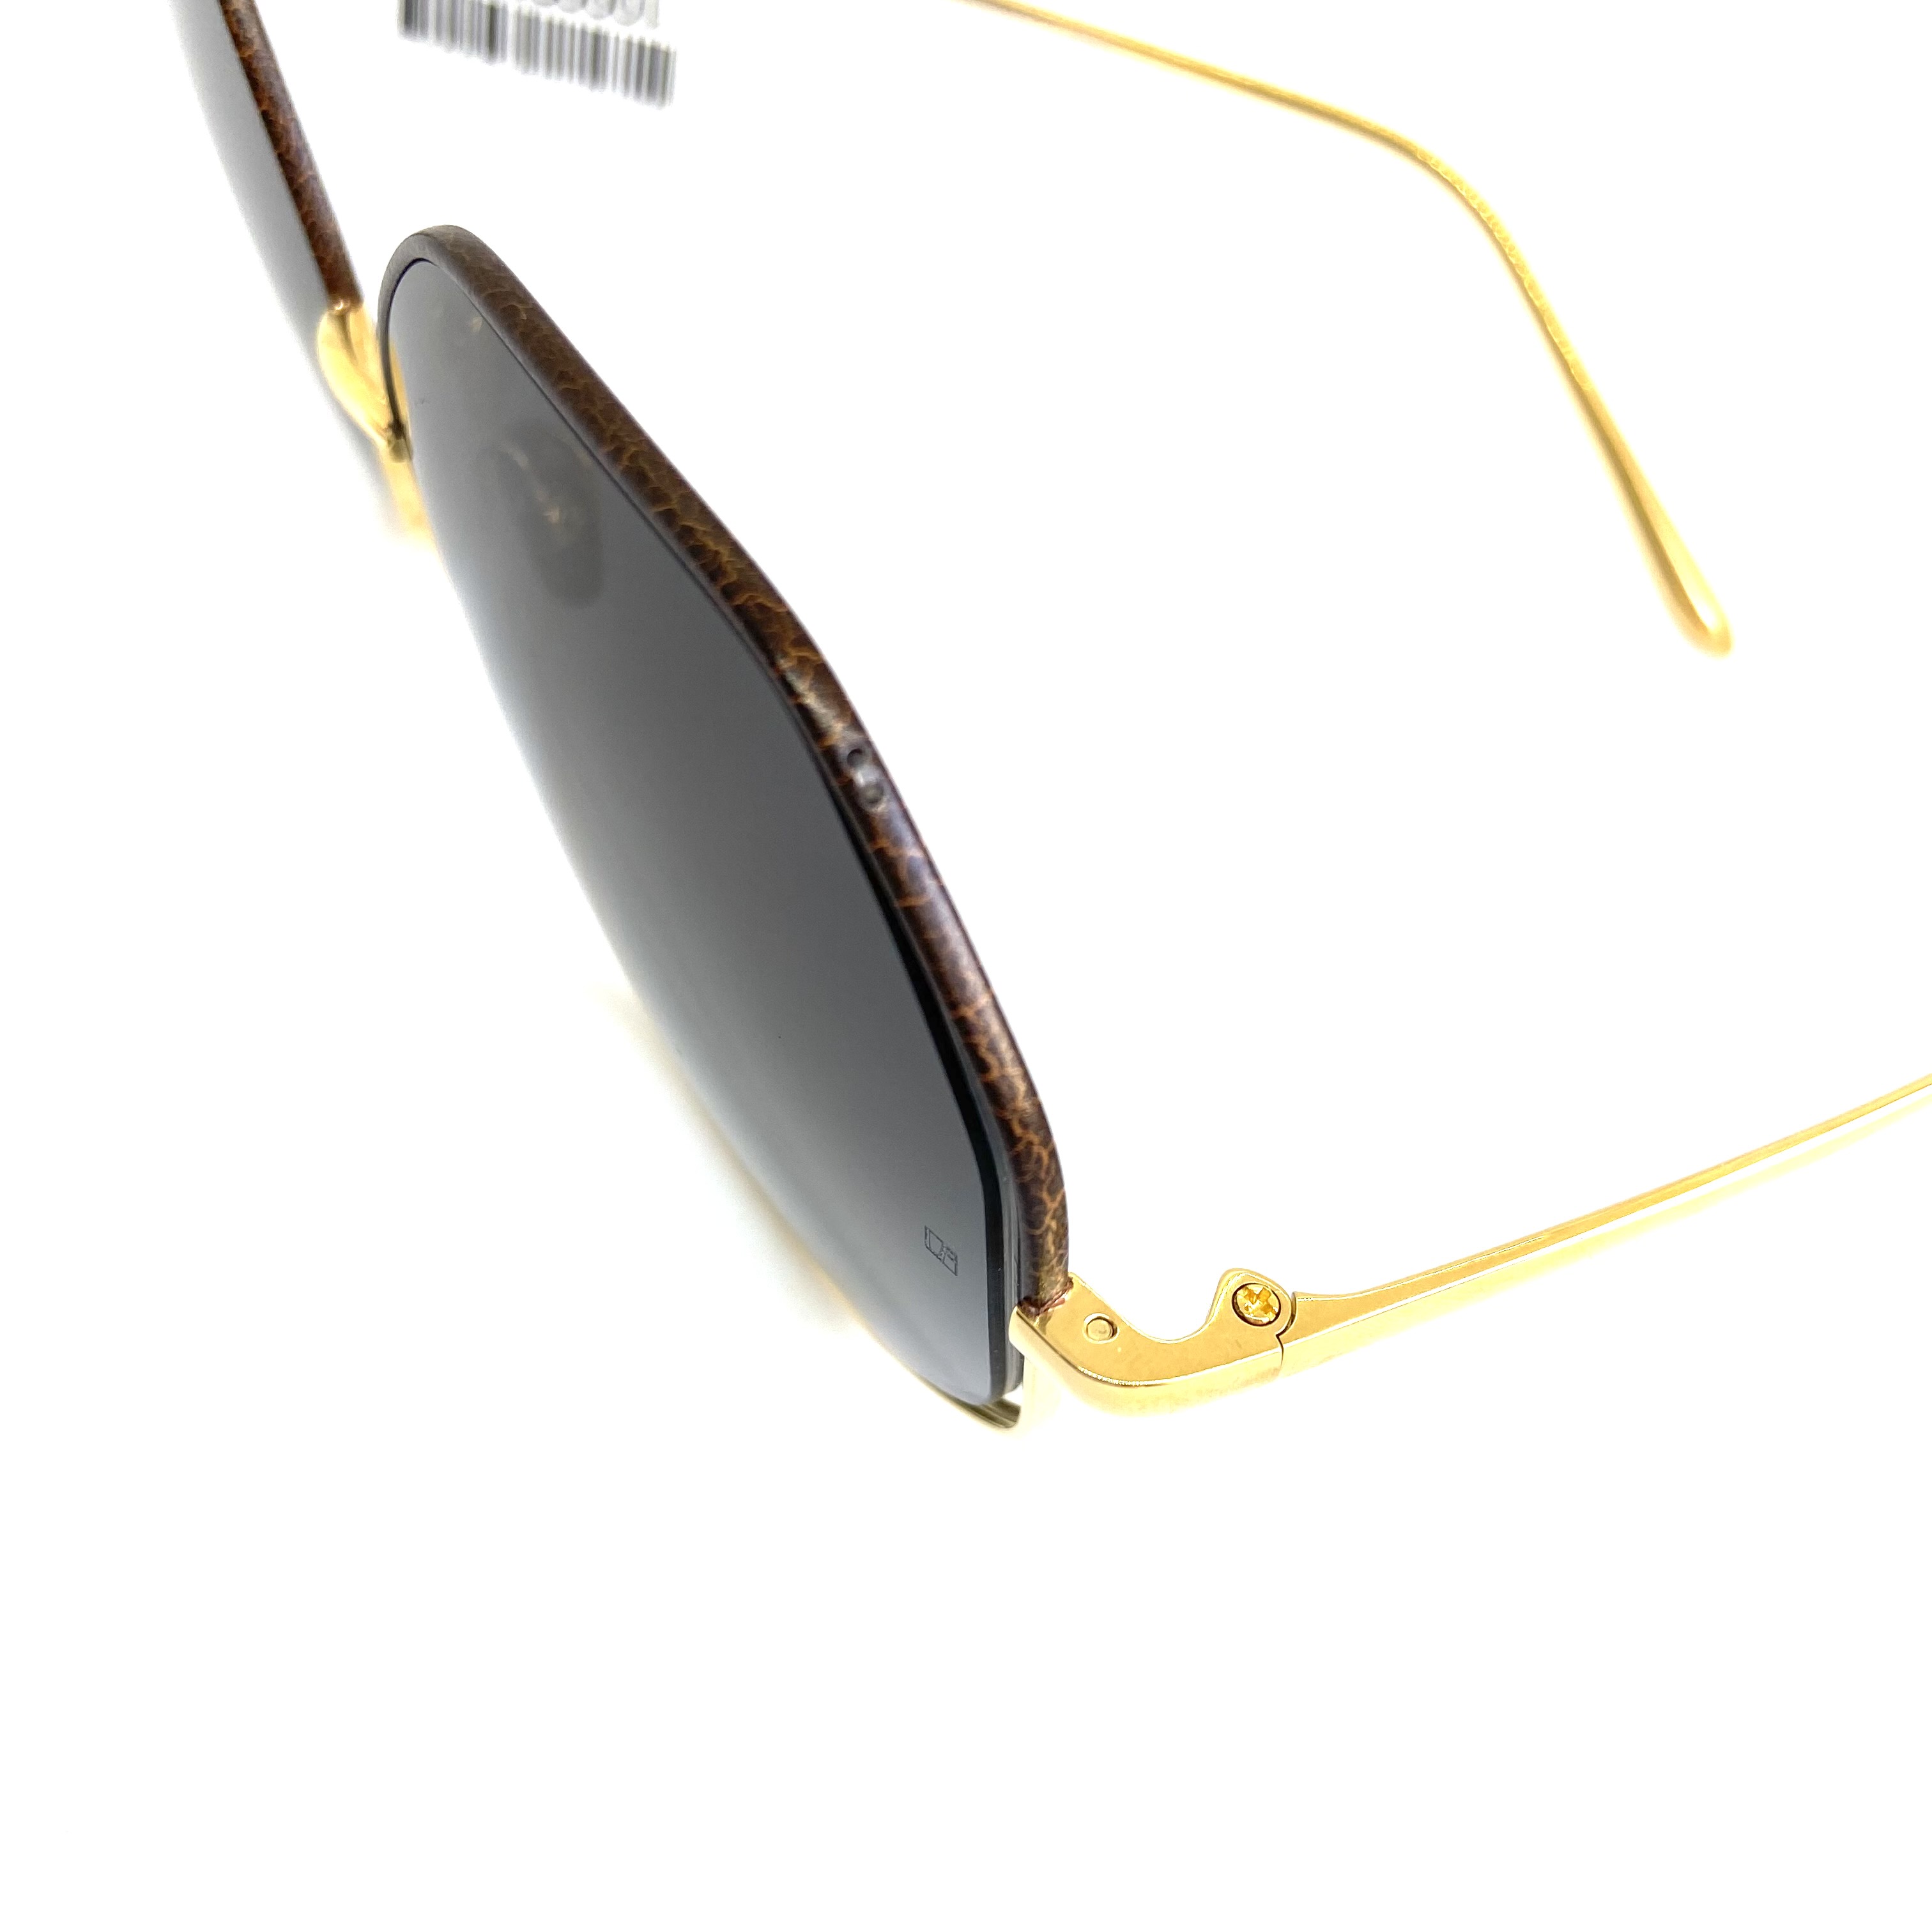 Солнцезащитные очки Linda Farrow модель 1009